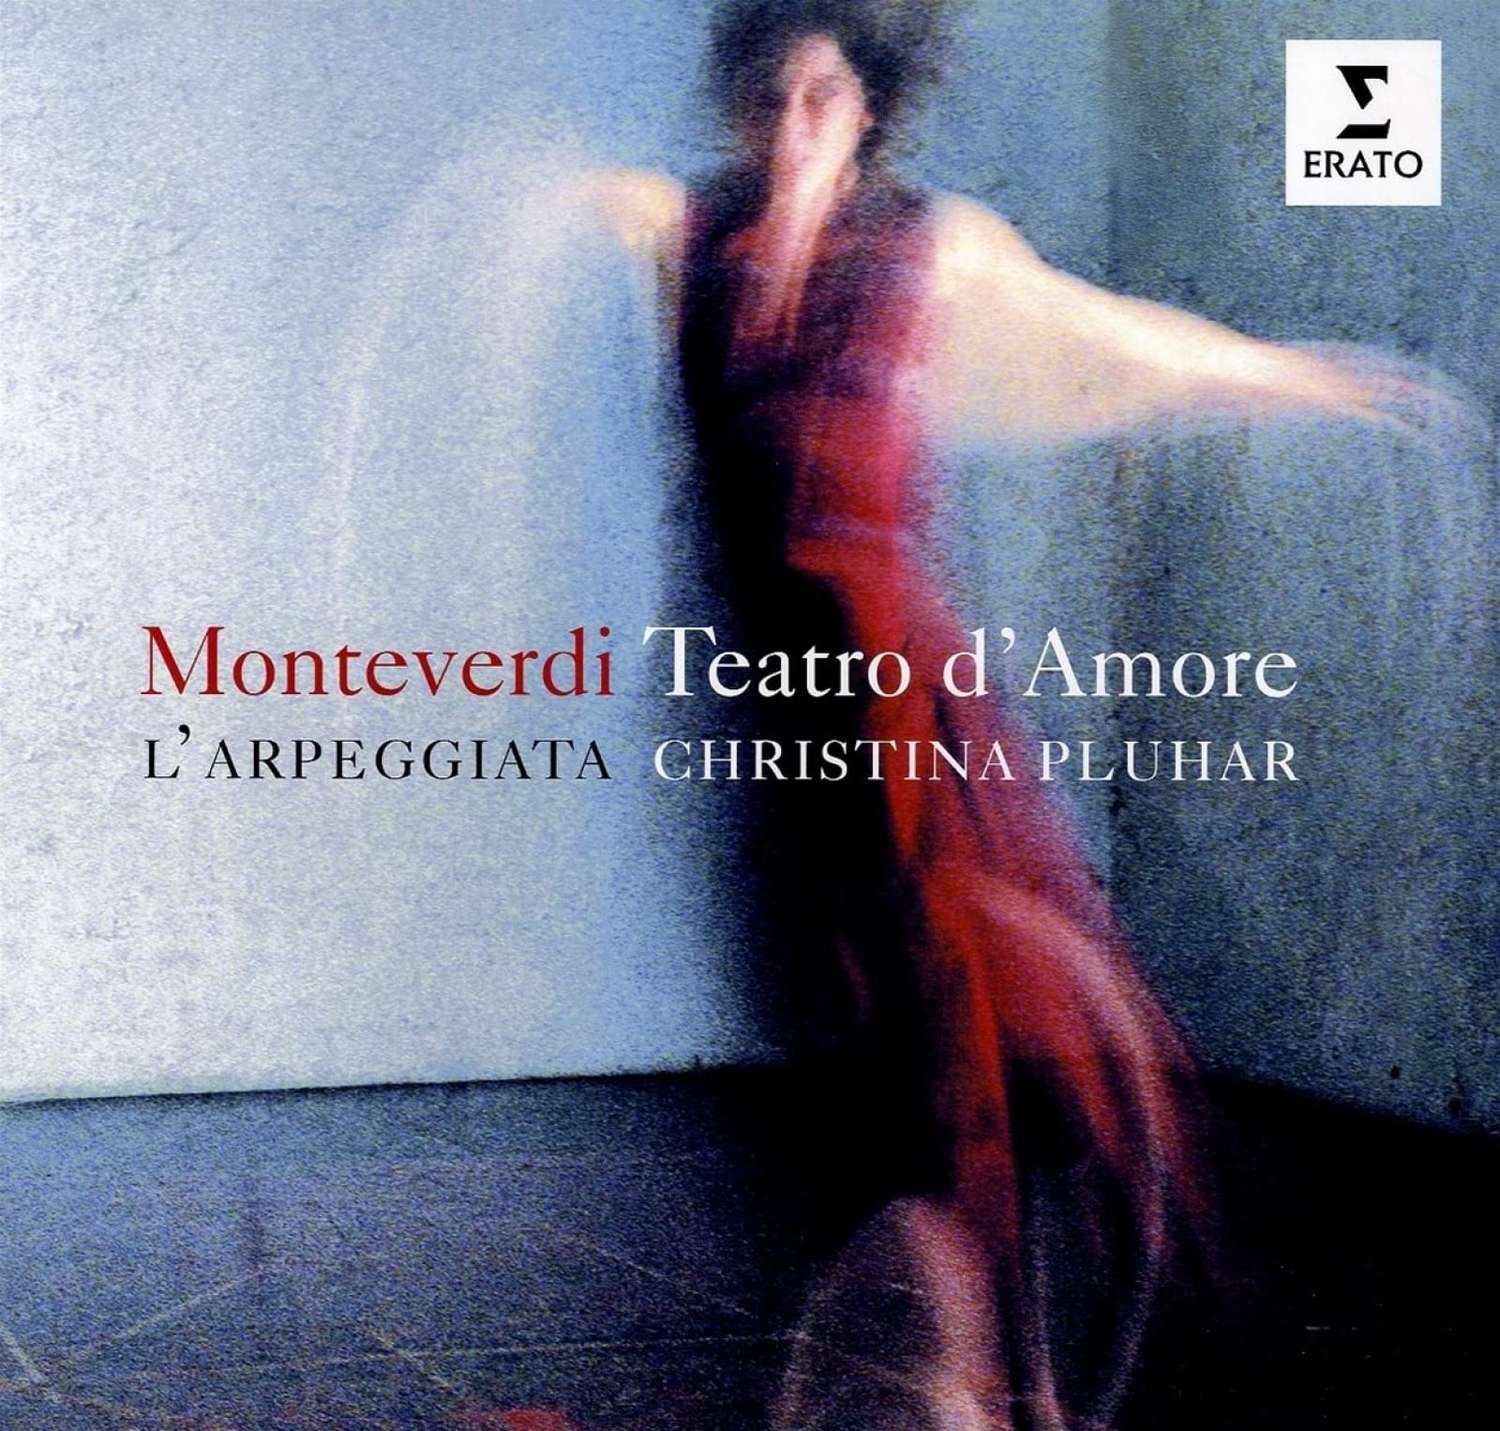 Виниловая Пластинка L'Arpeggiata, Christina Pluhar, Monteverdi: Teatro D'Amore (5054197250101) a5 20 отверстий b5 26 отверстий a4 a7 a6 diy связующие зажимы зажимы для журнала